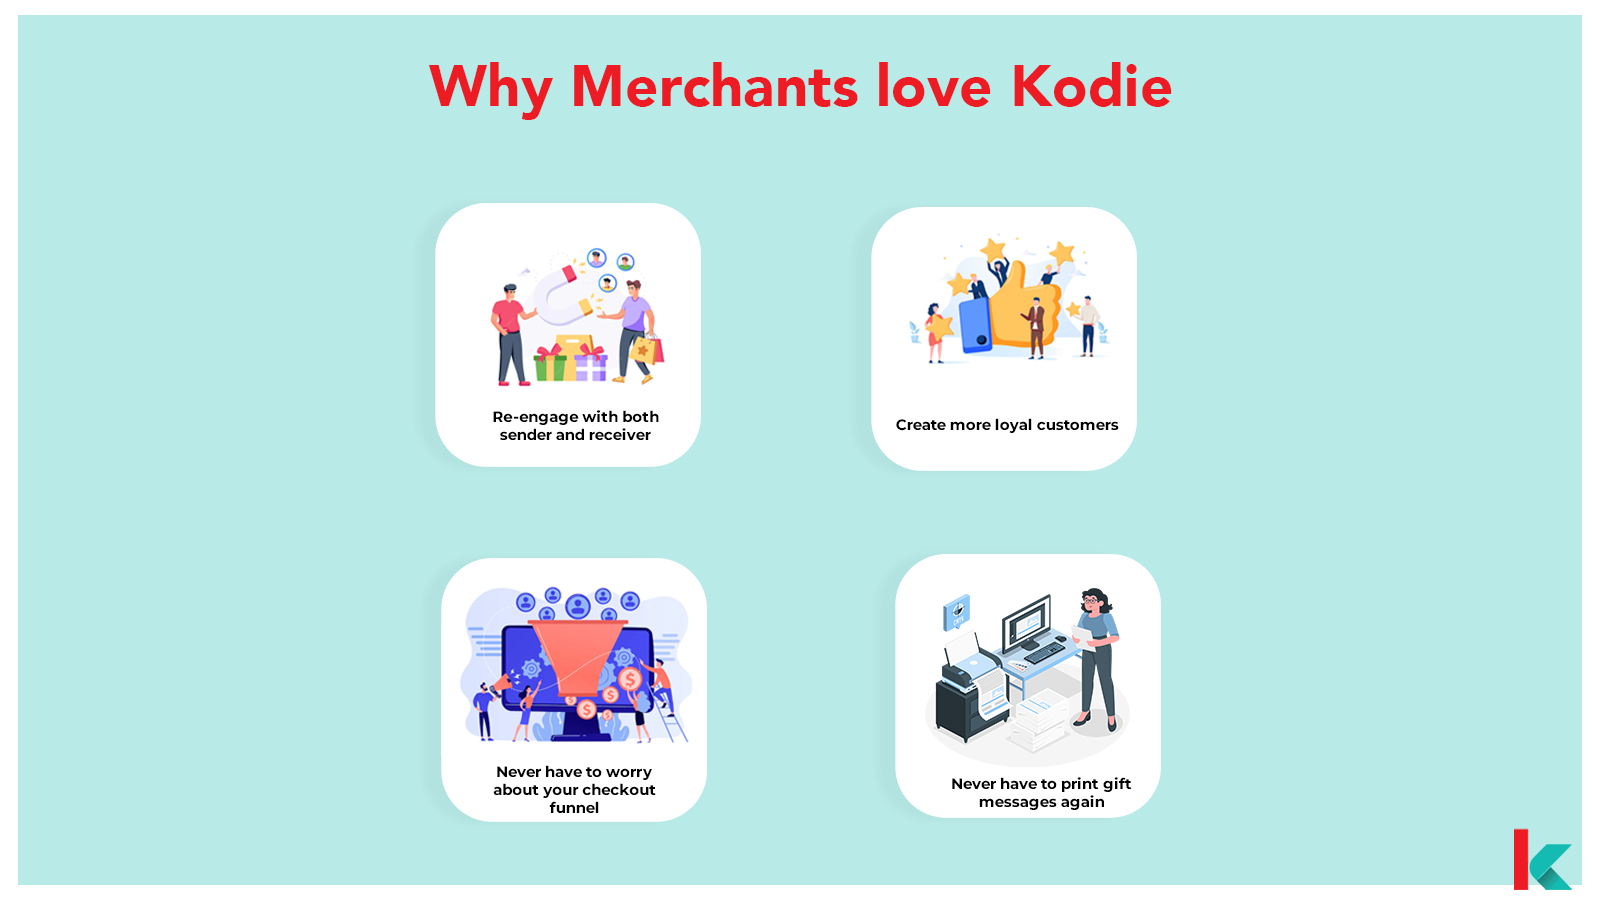 Kodie - Benefits to merchants